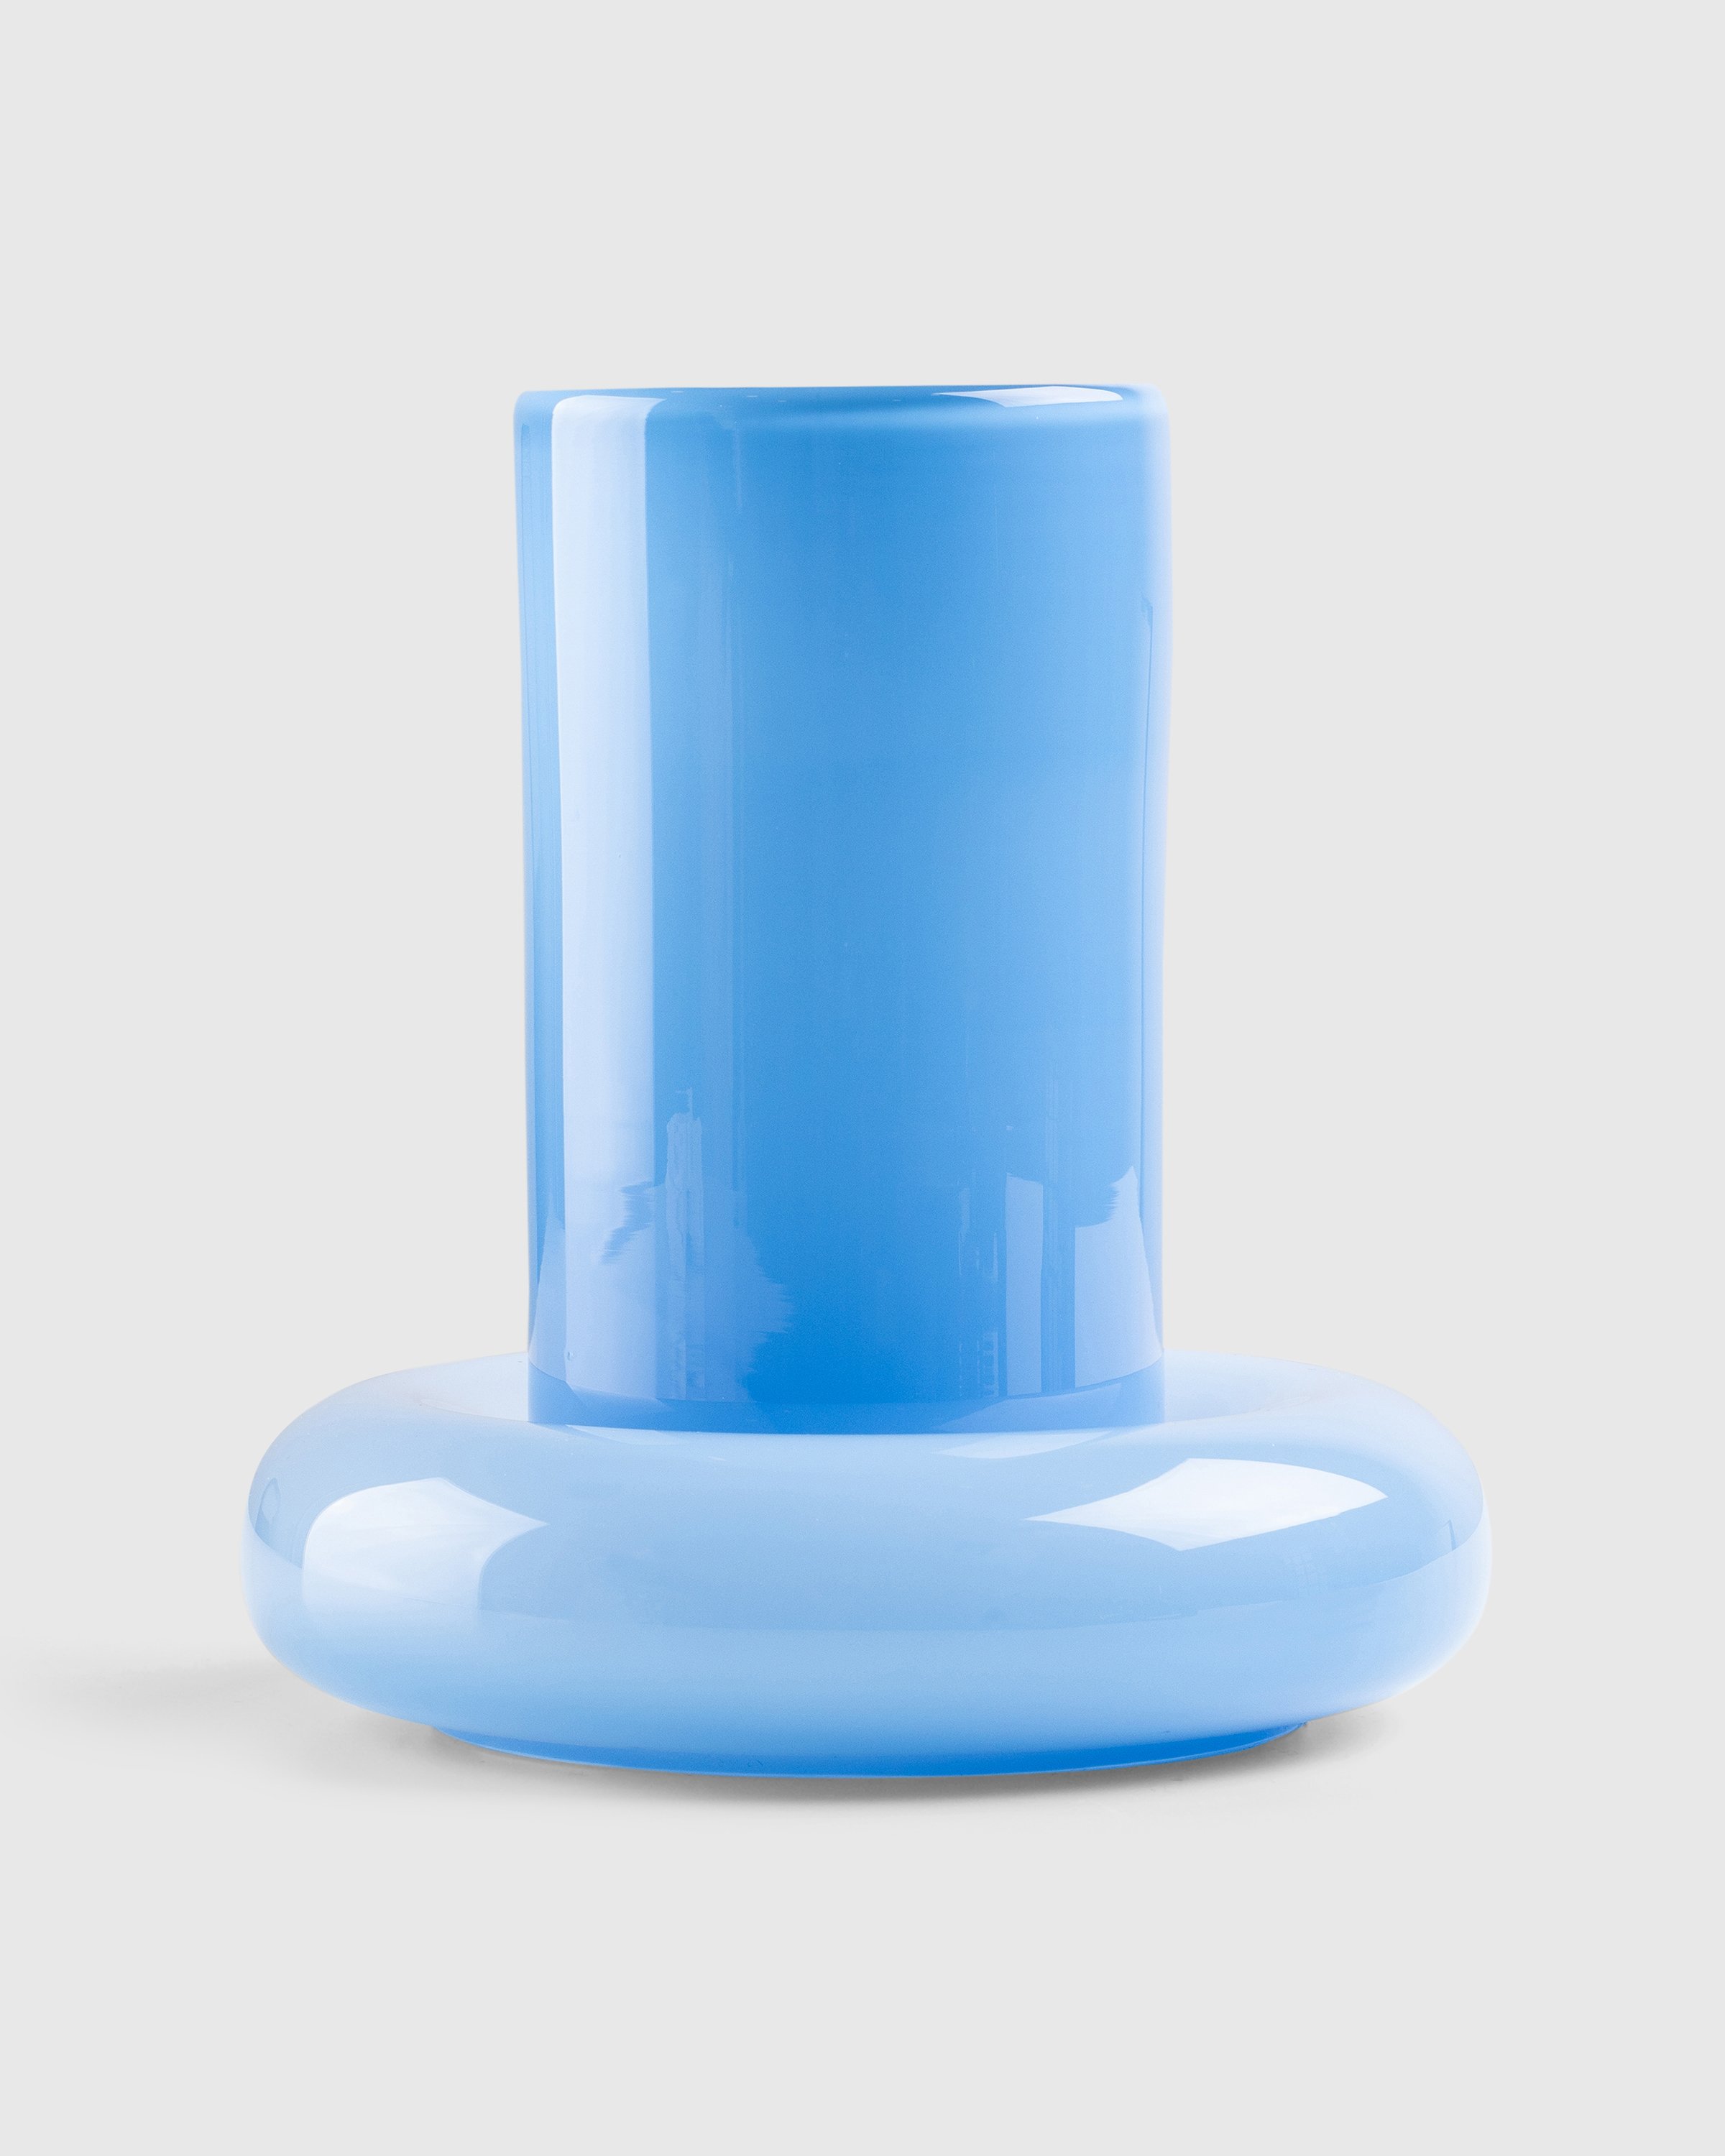 Gustaf Westman - Chunky Vase 0023 Light Blue - Lifestyle - Blue - Image 1